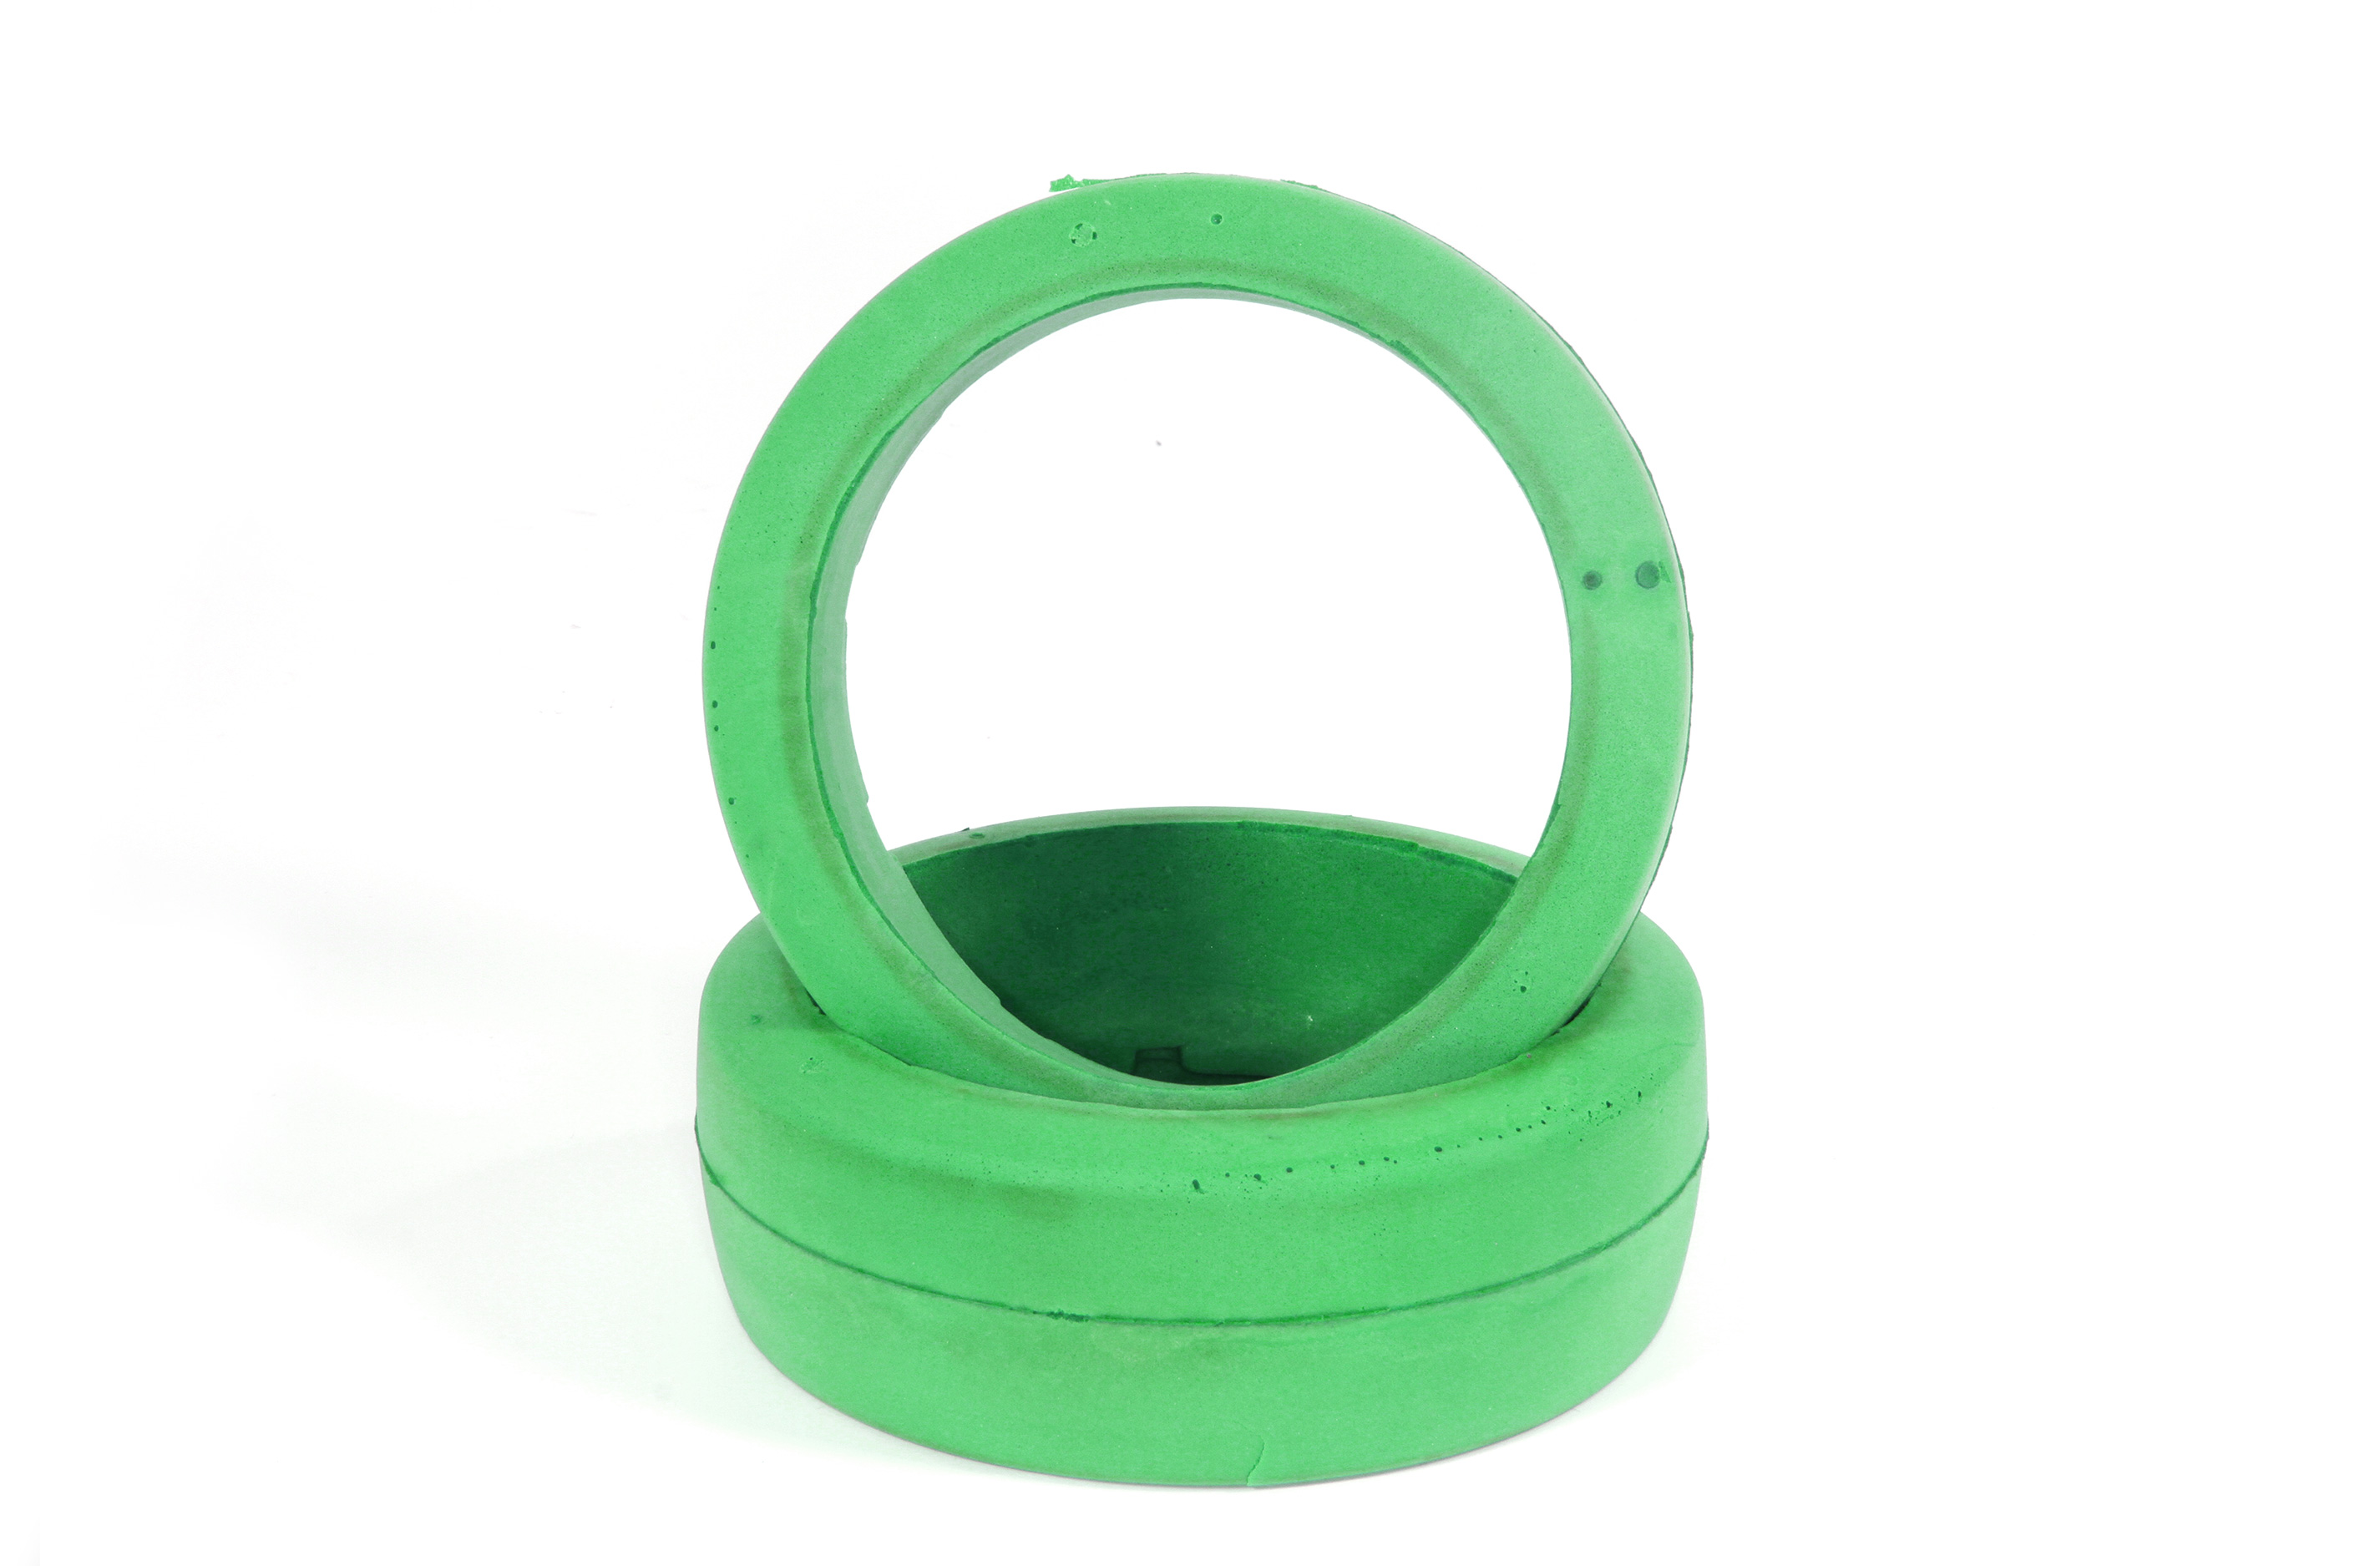 y1449 Speziell geformte Reifeneinlagen grün für 170 mm  Ø HPI + Losi - Reifen in 60/75 mm Breite